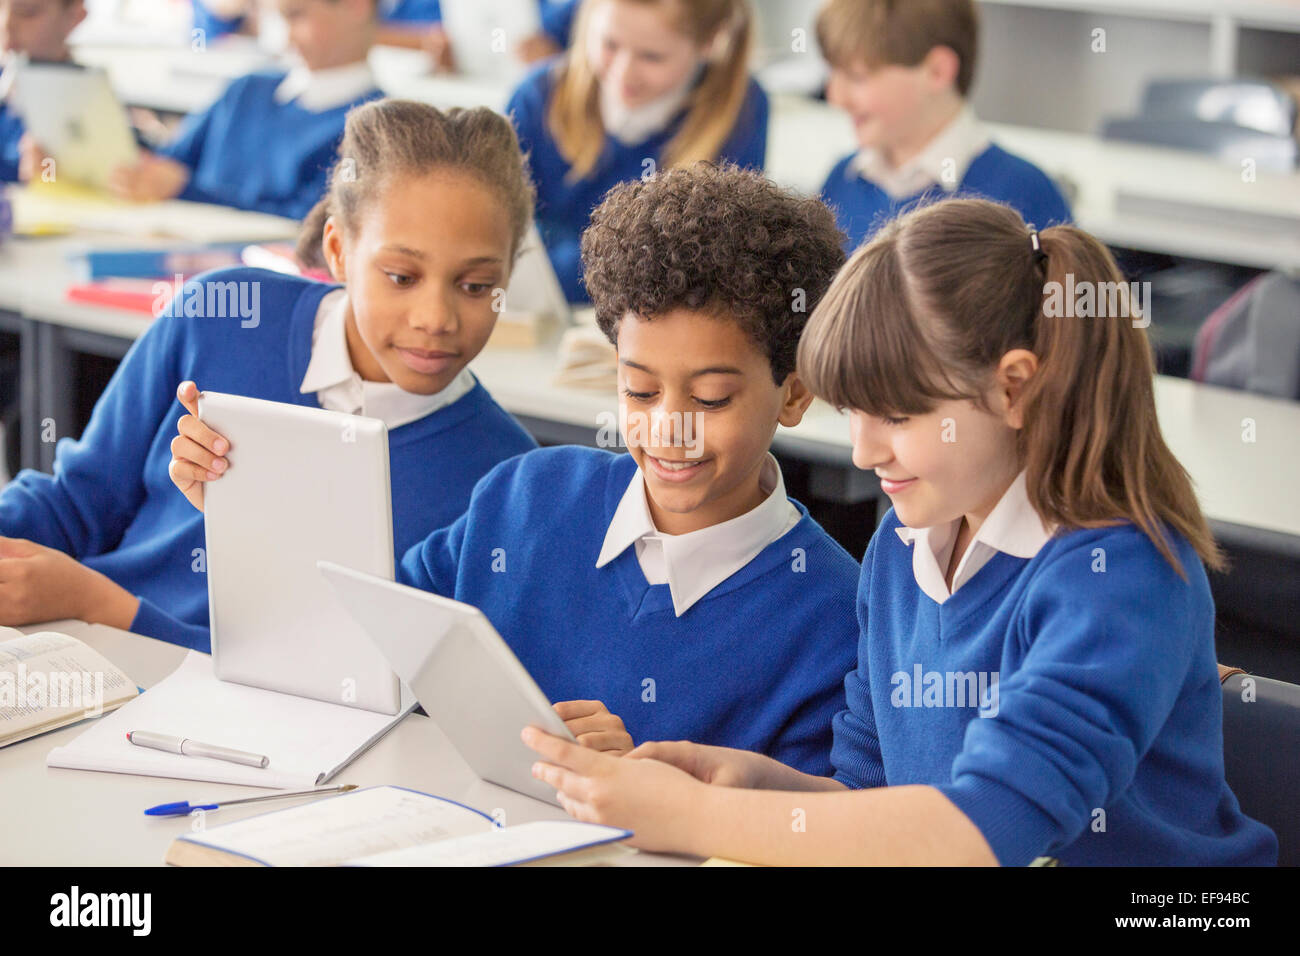 Les enfants de l'école élémentaire portant des uniformes scolaires bleu à l'aide de digital tablets in classroom Banque D'Images